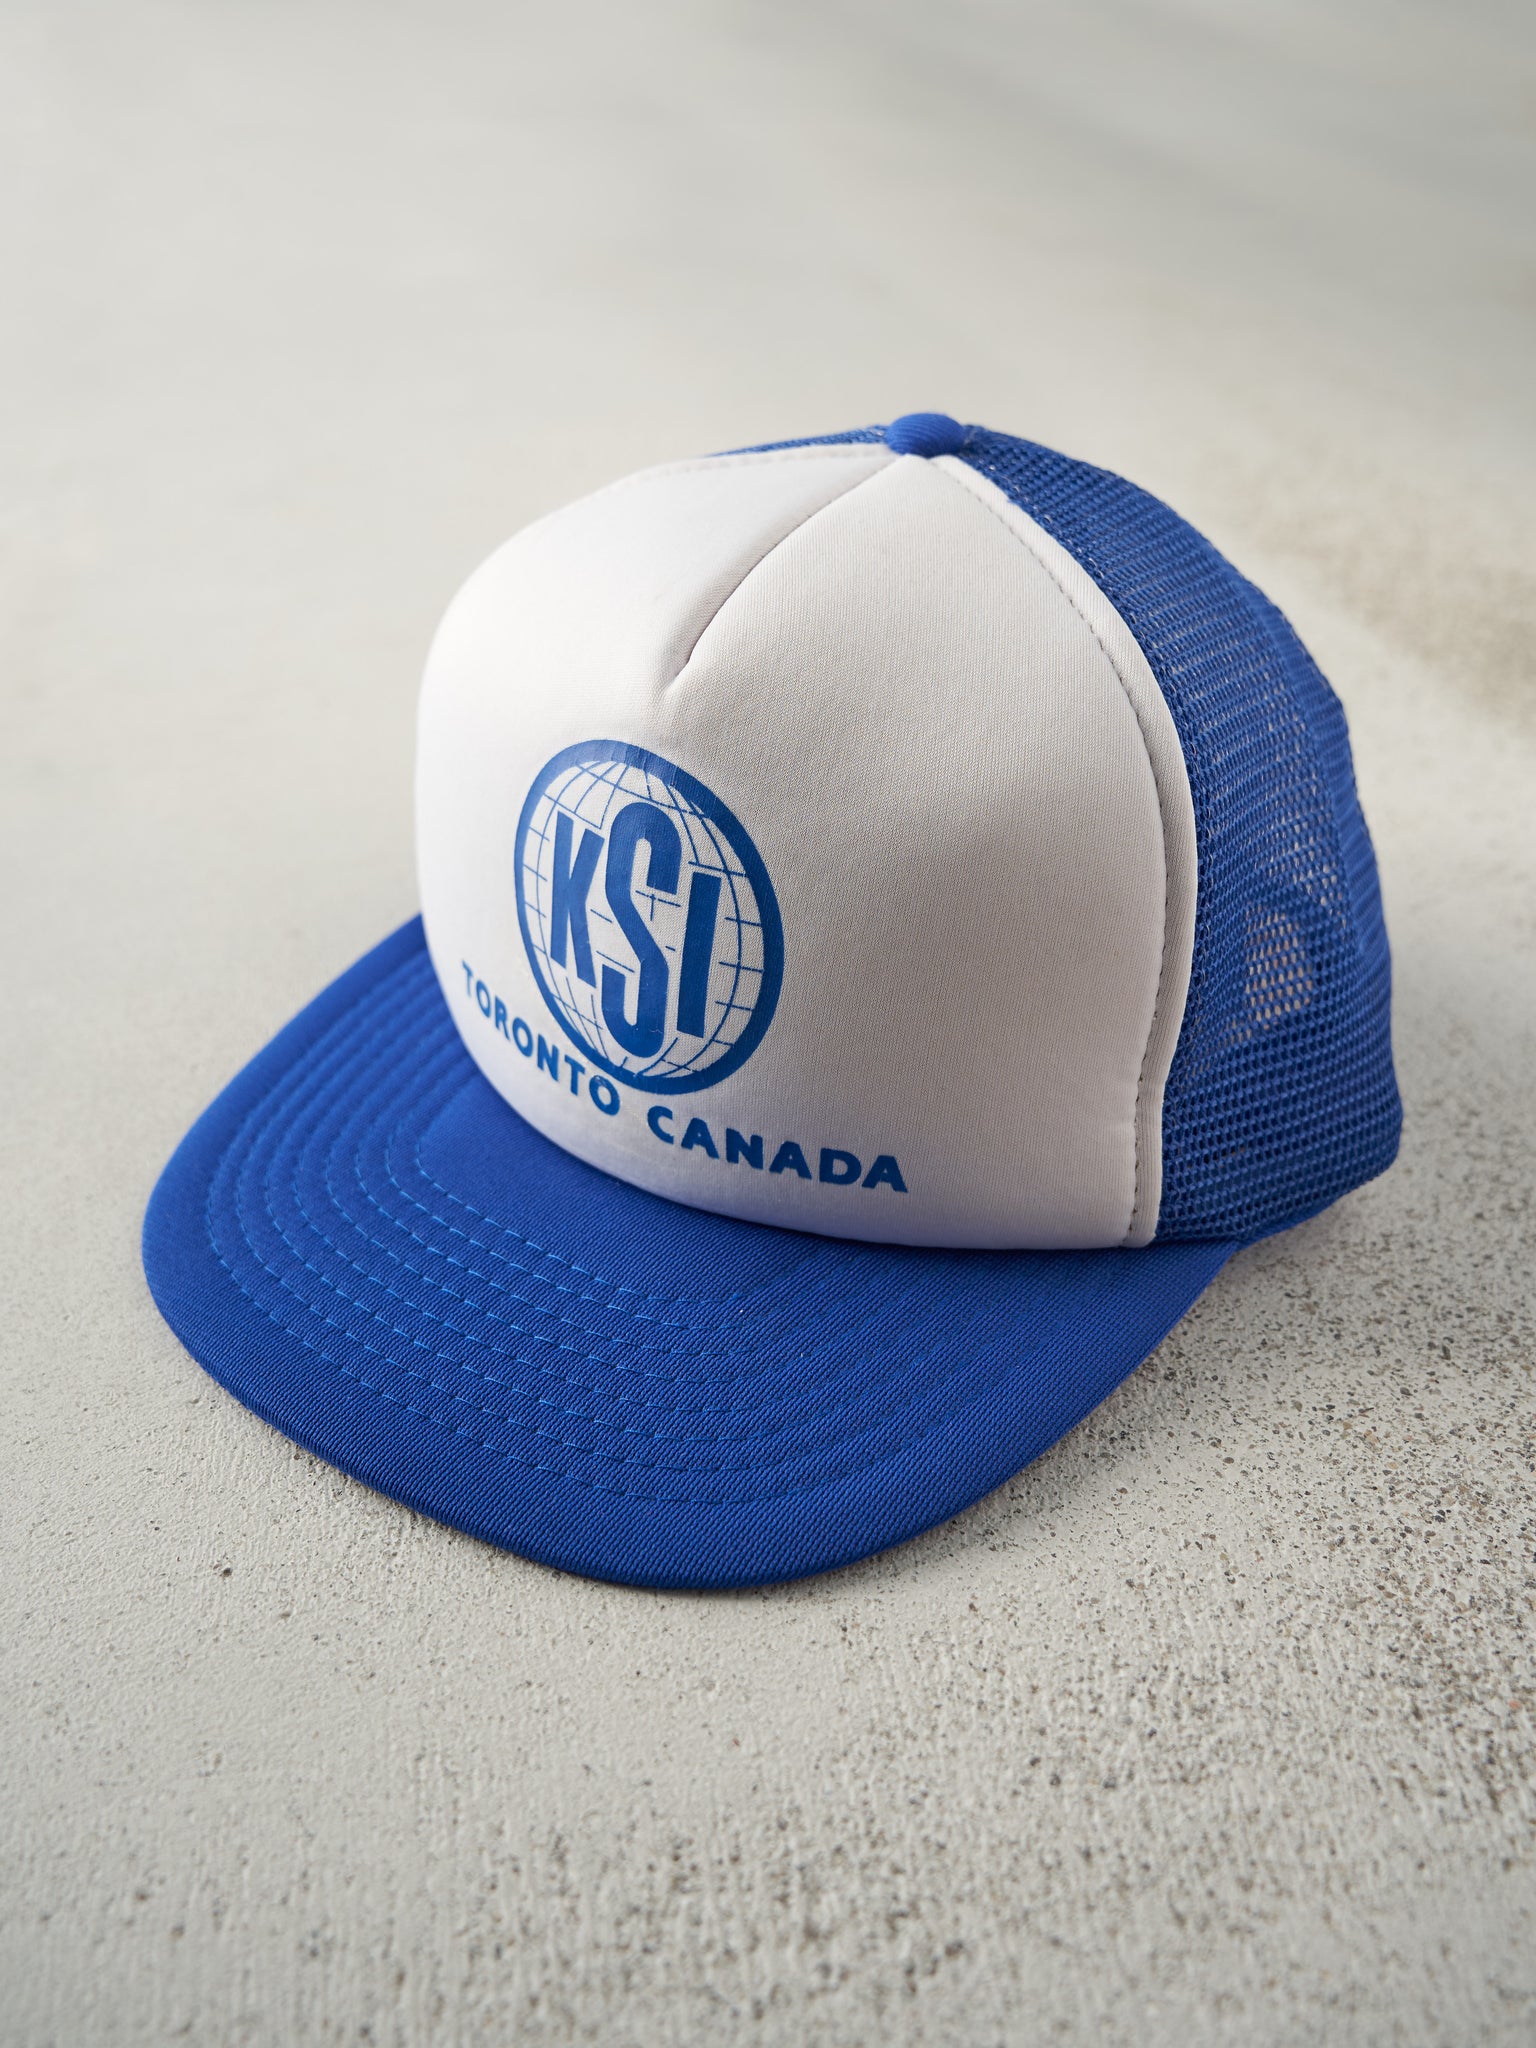 Vintage 90s Blue & White Toronto KSI Foam Trucker Hat